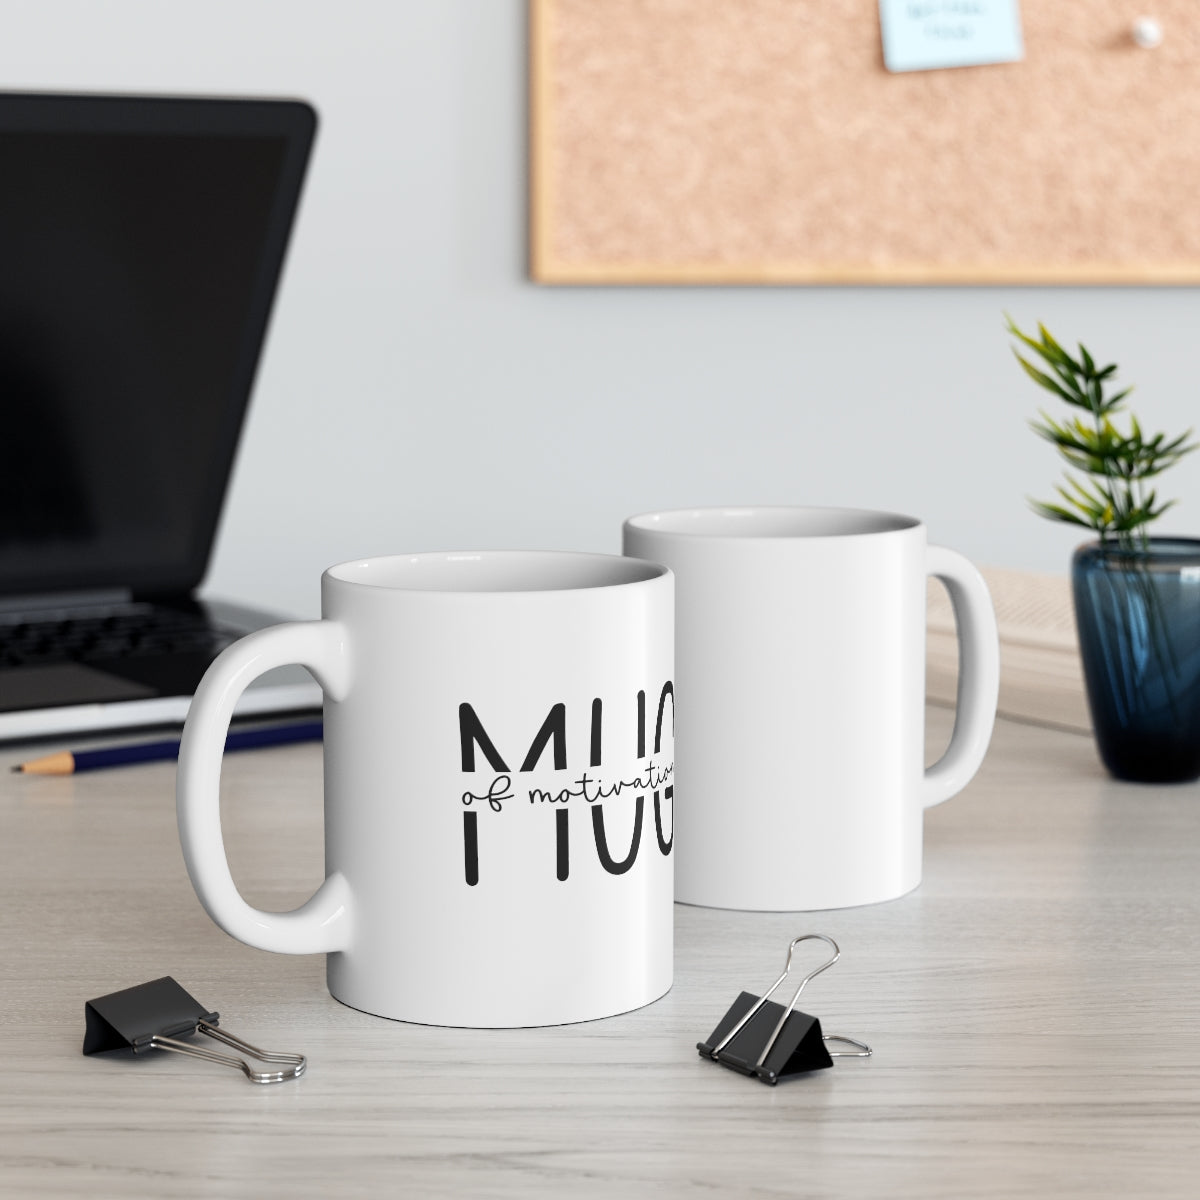 Mug of Motivation Ceramic Mug